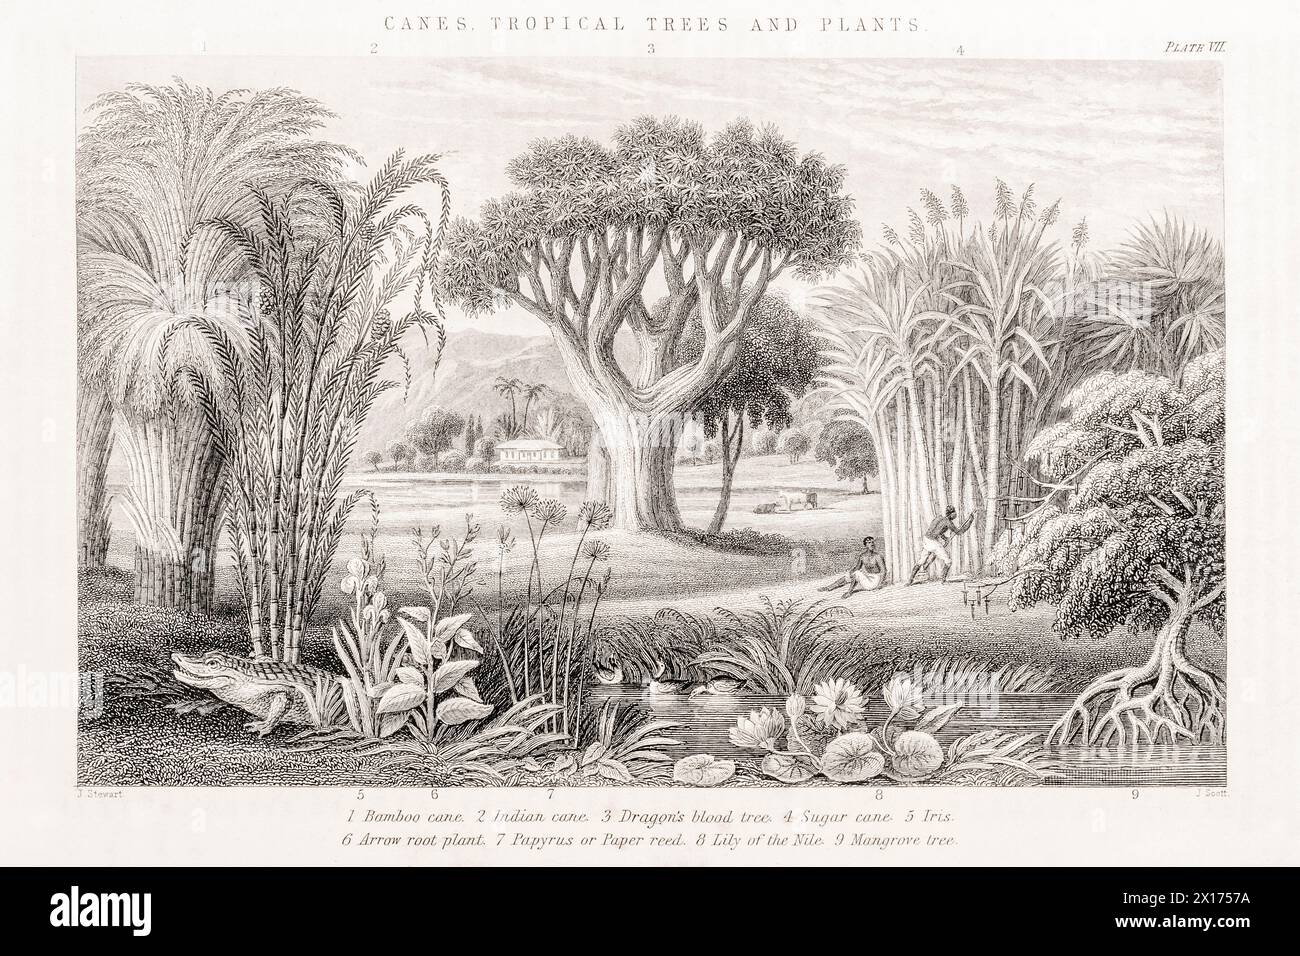 1872 quadro botanico vittoriano in William Rhind: Canne, alberi tropicali e piante. Mostra canna da zucchero, Papiro, bambù, mangrovie, albero del sangue del drago. Foto Stock